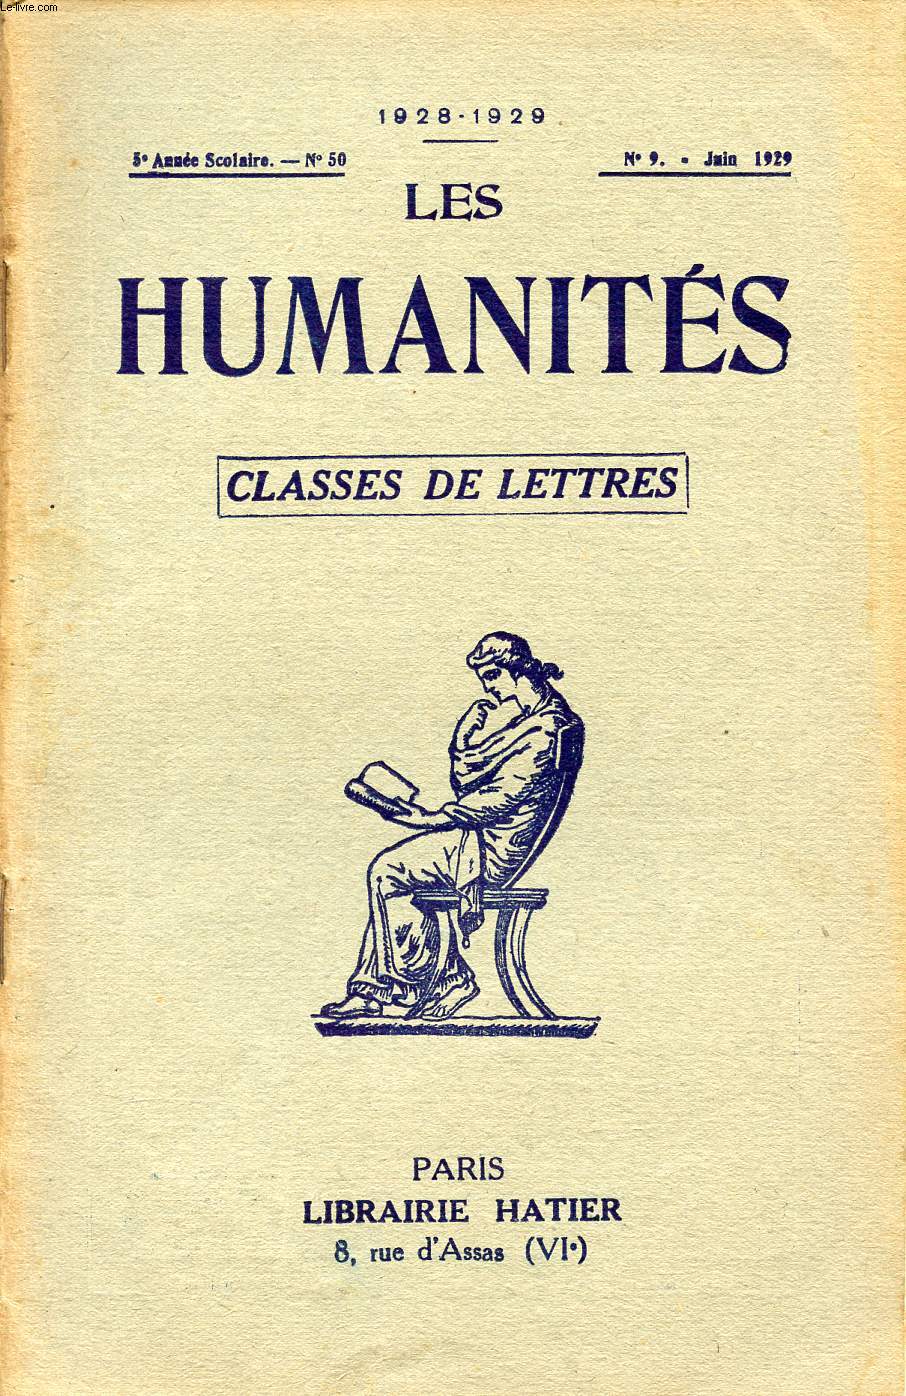 LES HUMANITES / CLASSES DE LETTRES / 5me ANNEE SCOLAIRE - N50 / ANNEE 1928-1929 / N9 - JUIN 1929.